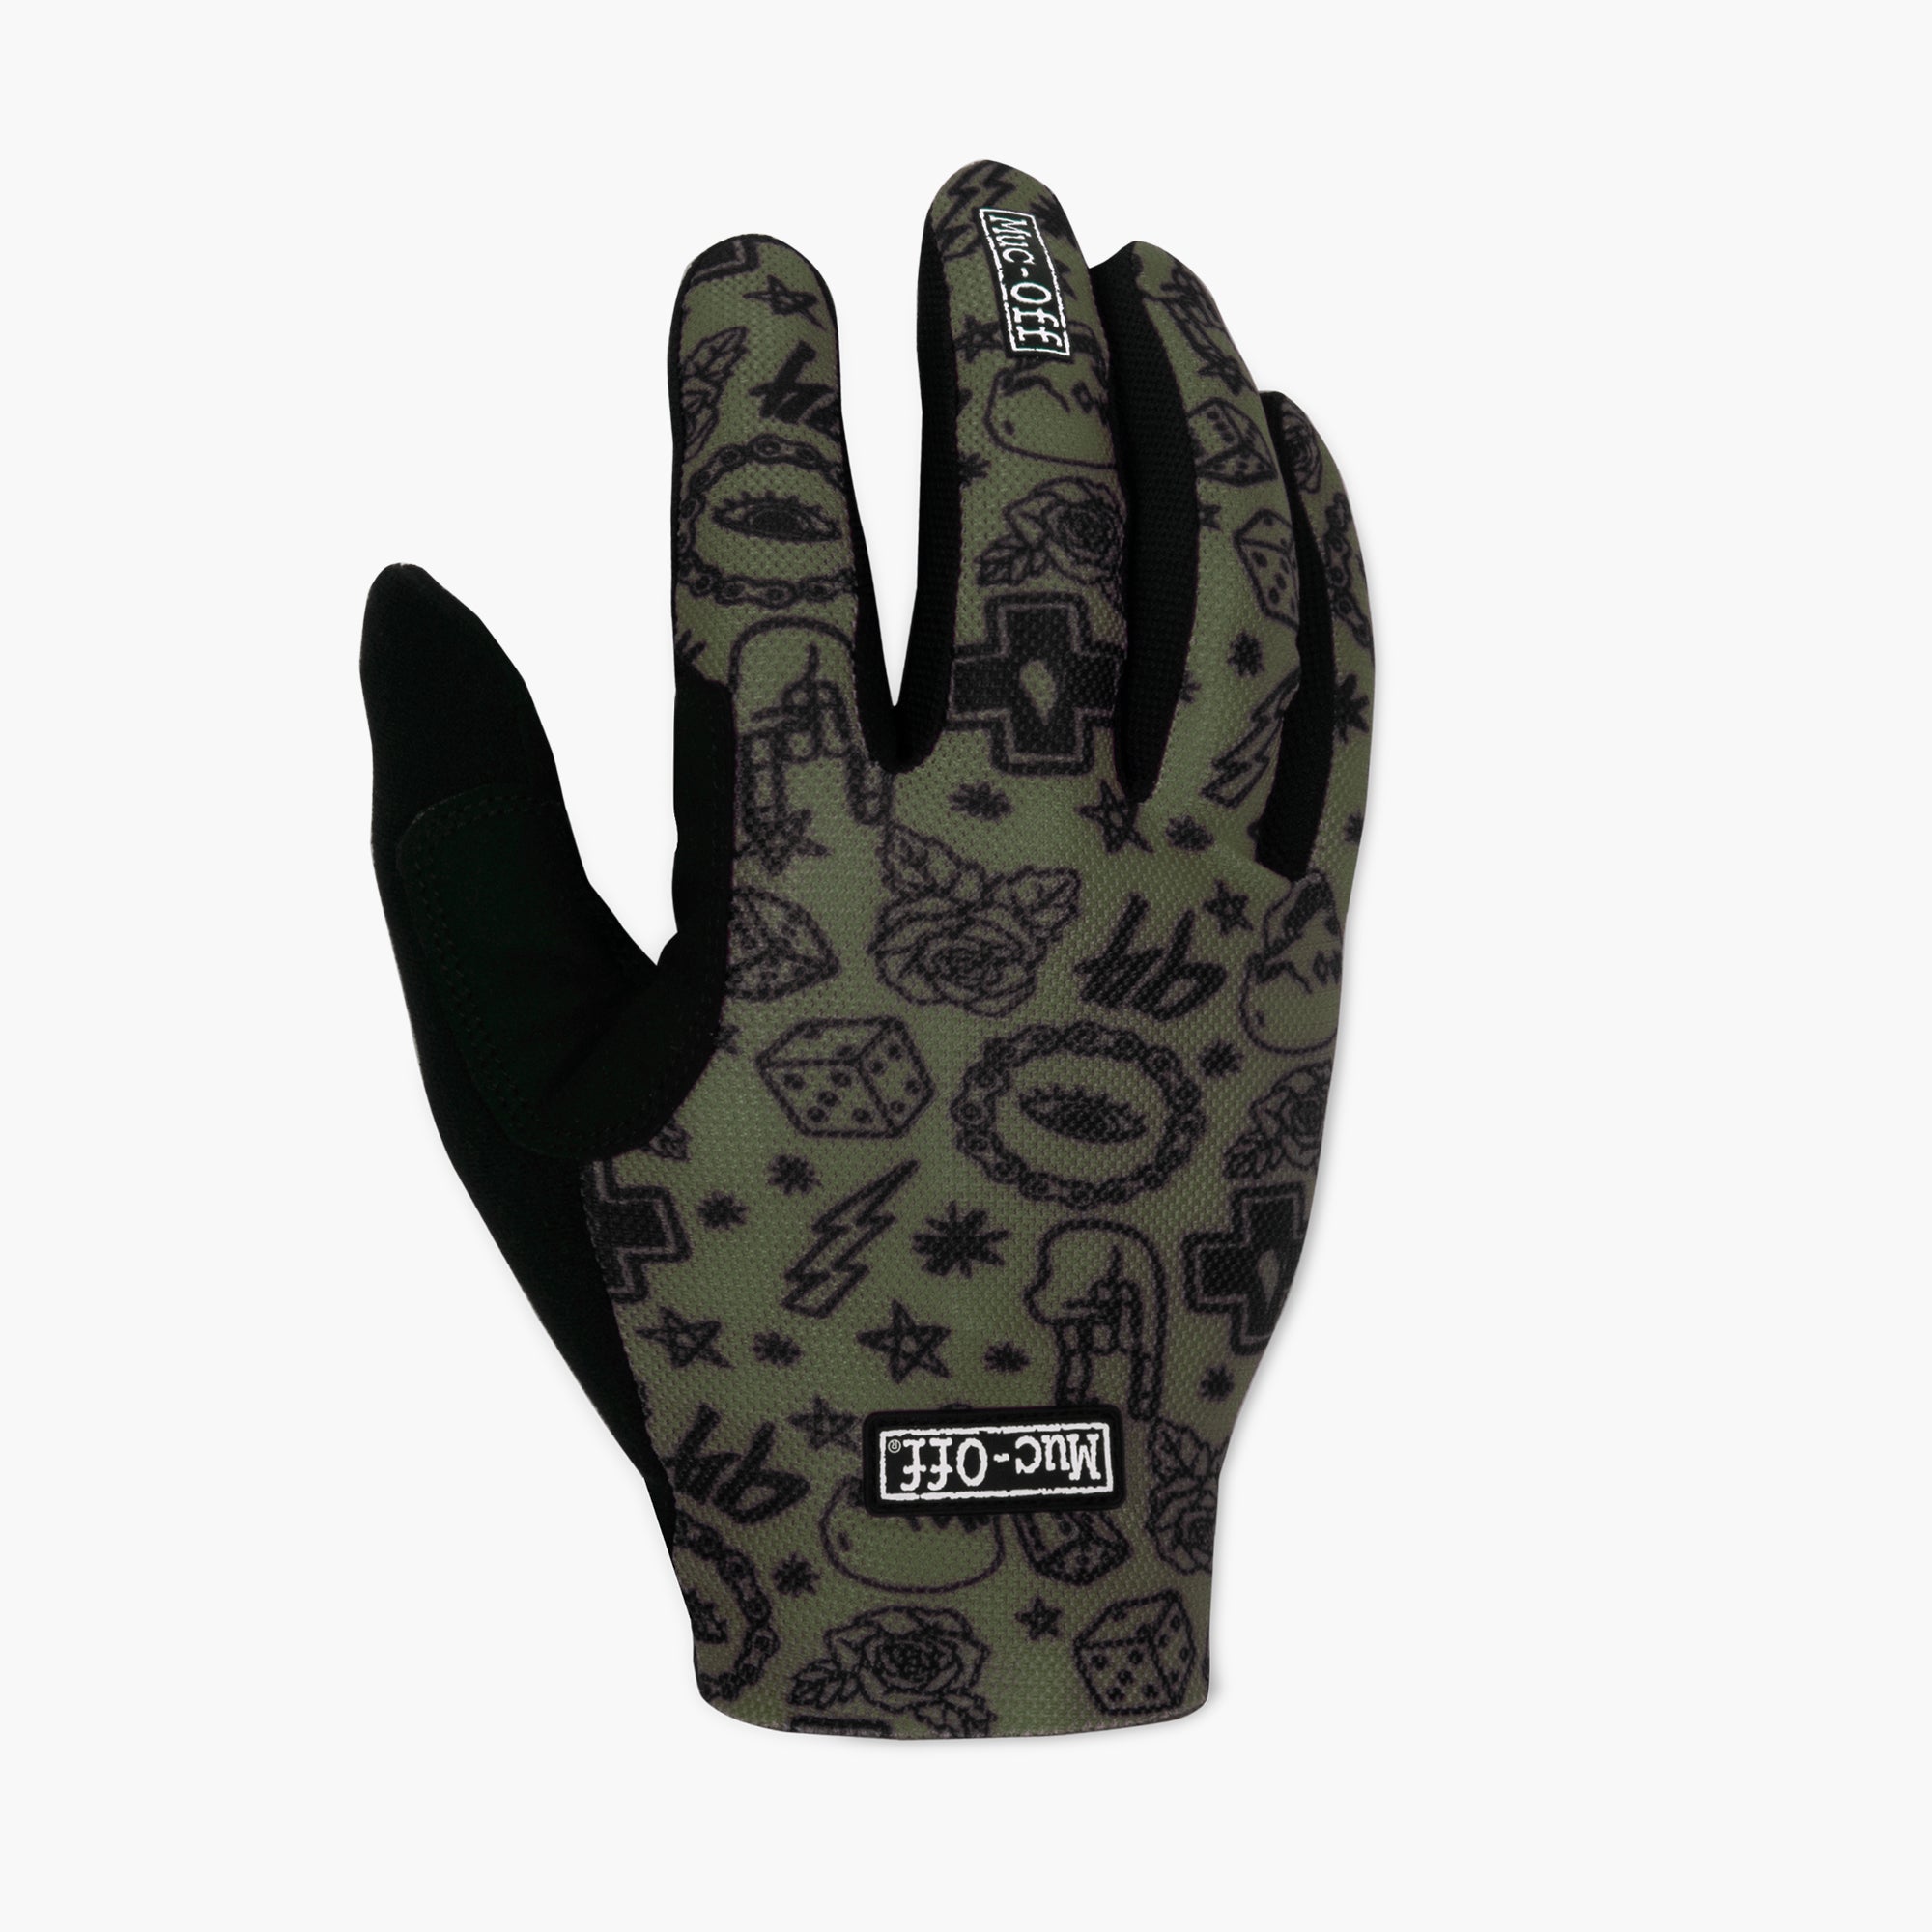 Photos - Cycling Gloves Summer Lightweight Mesh Rider Gloves - Green L 